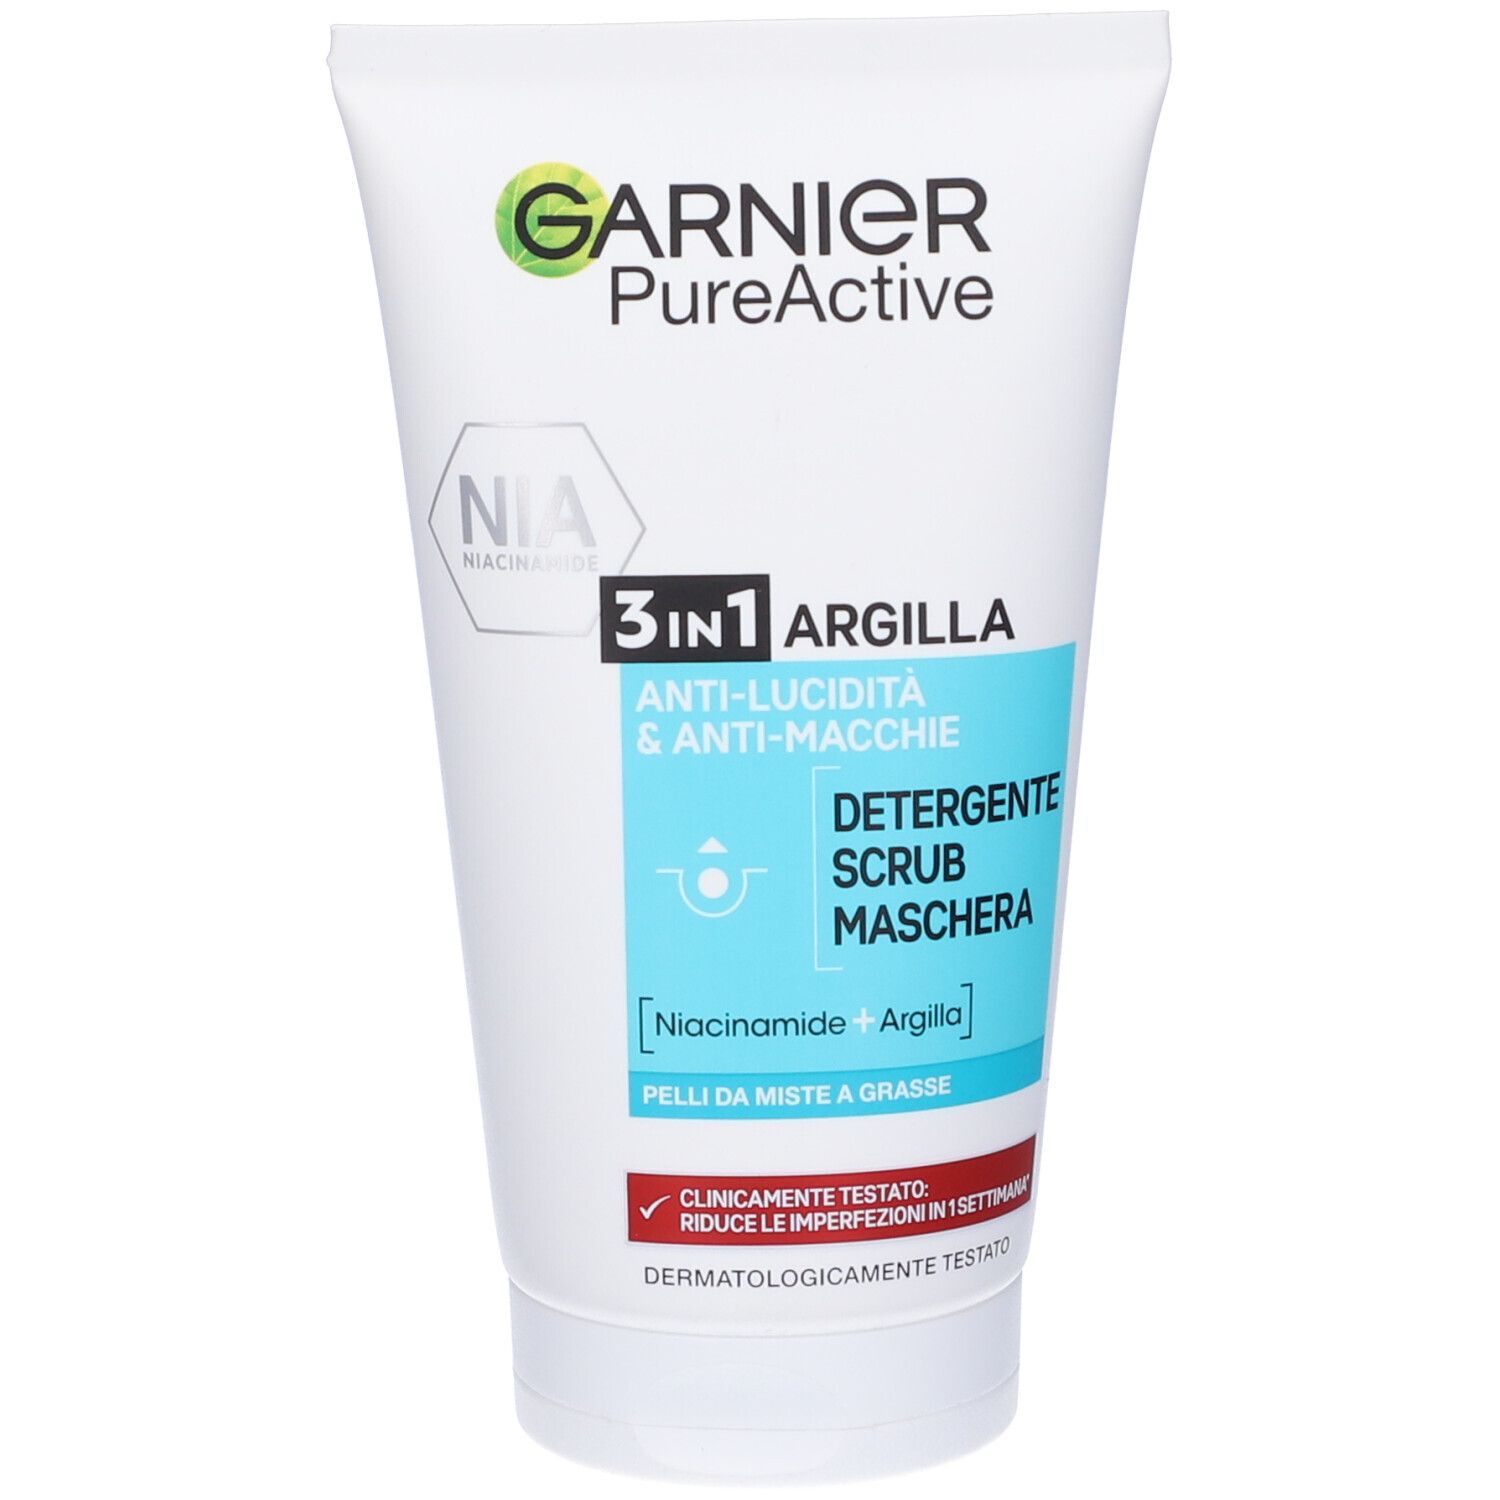 Image of Garnier Detergente Pure Active, Azione 3in1, Detergente + scrub + maschera per pelli grasse o con imperfezioni, 150 ml